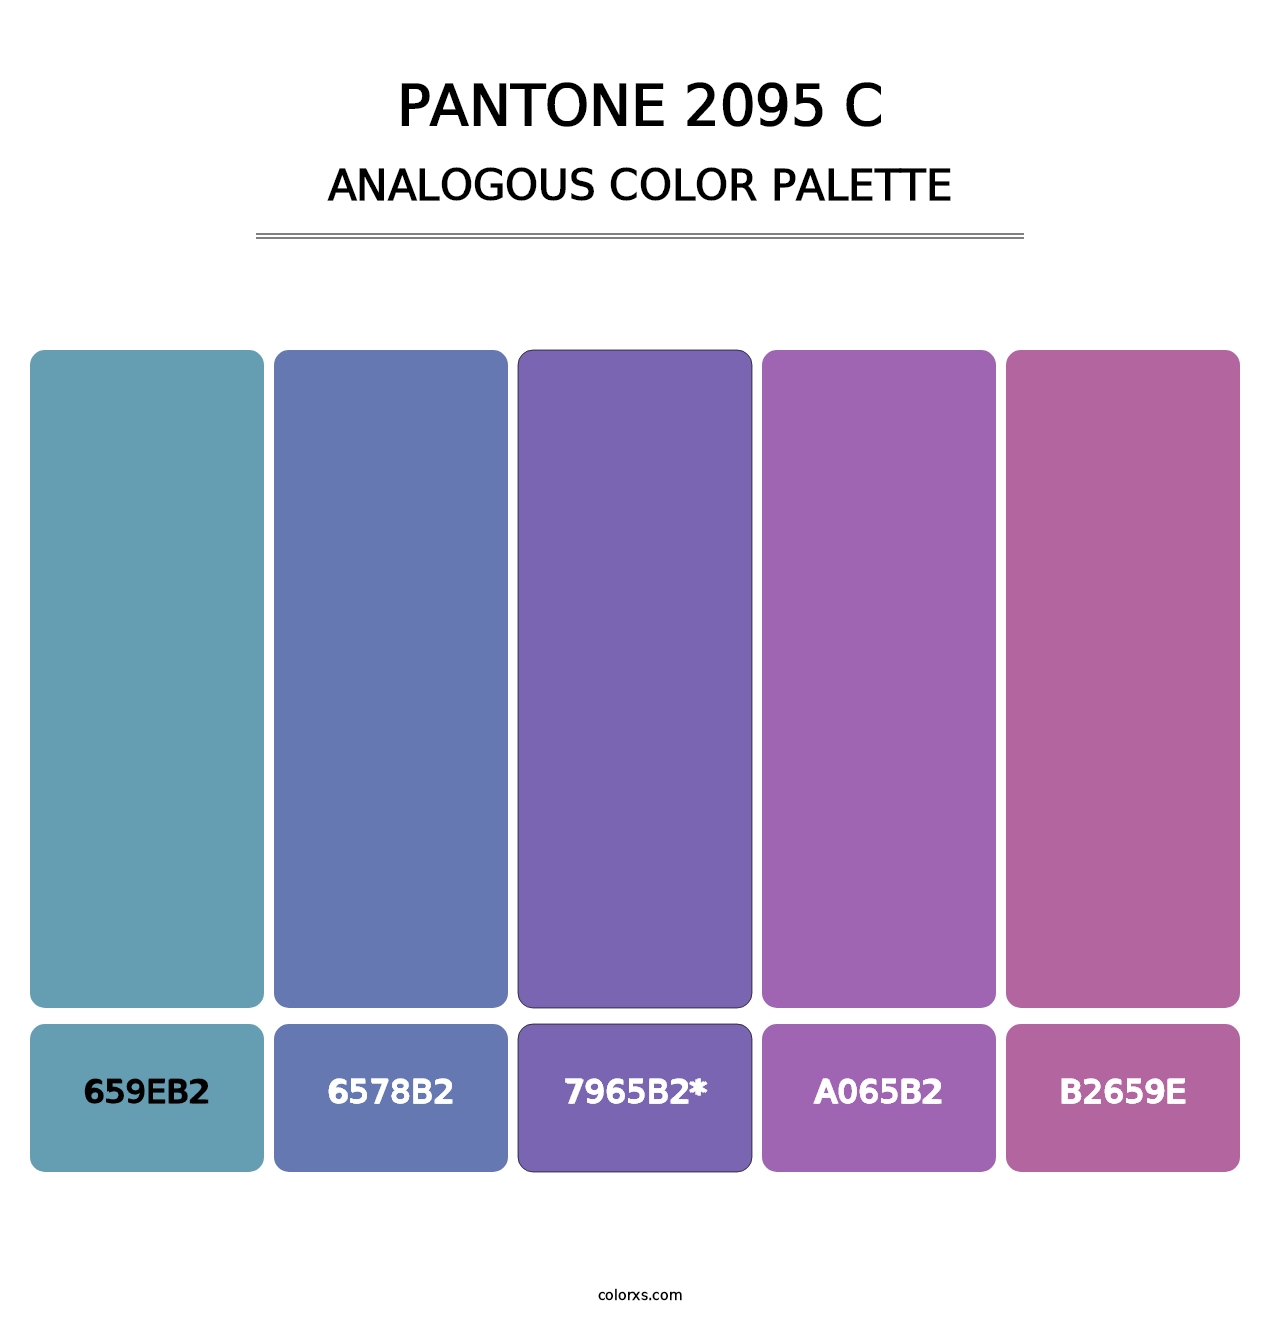 PANTONE 2095 C - Analogous Color Palette